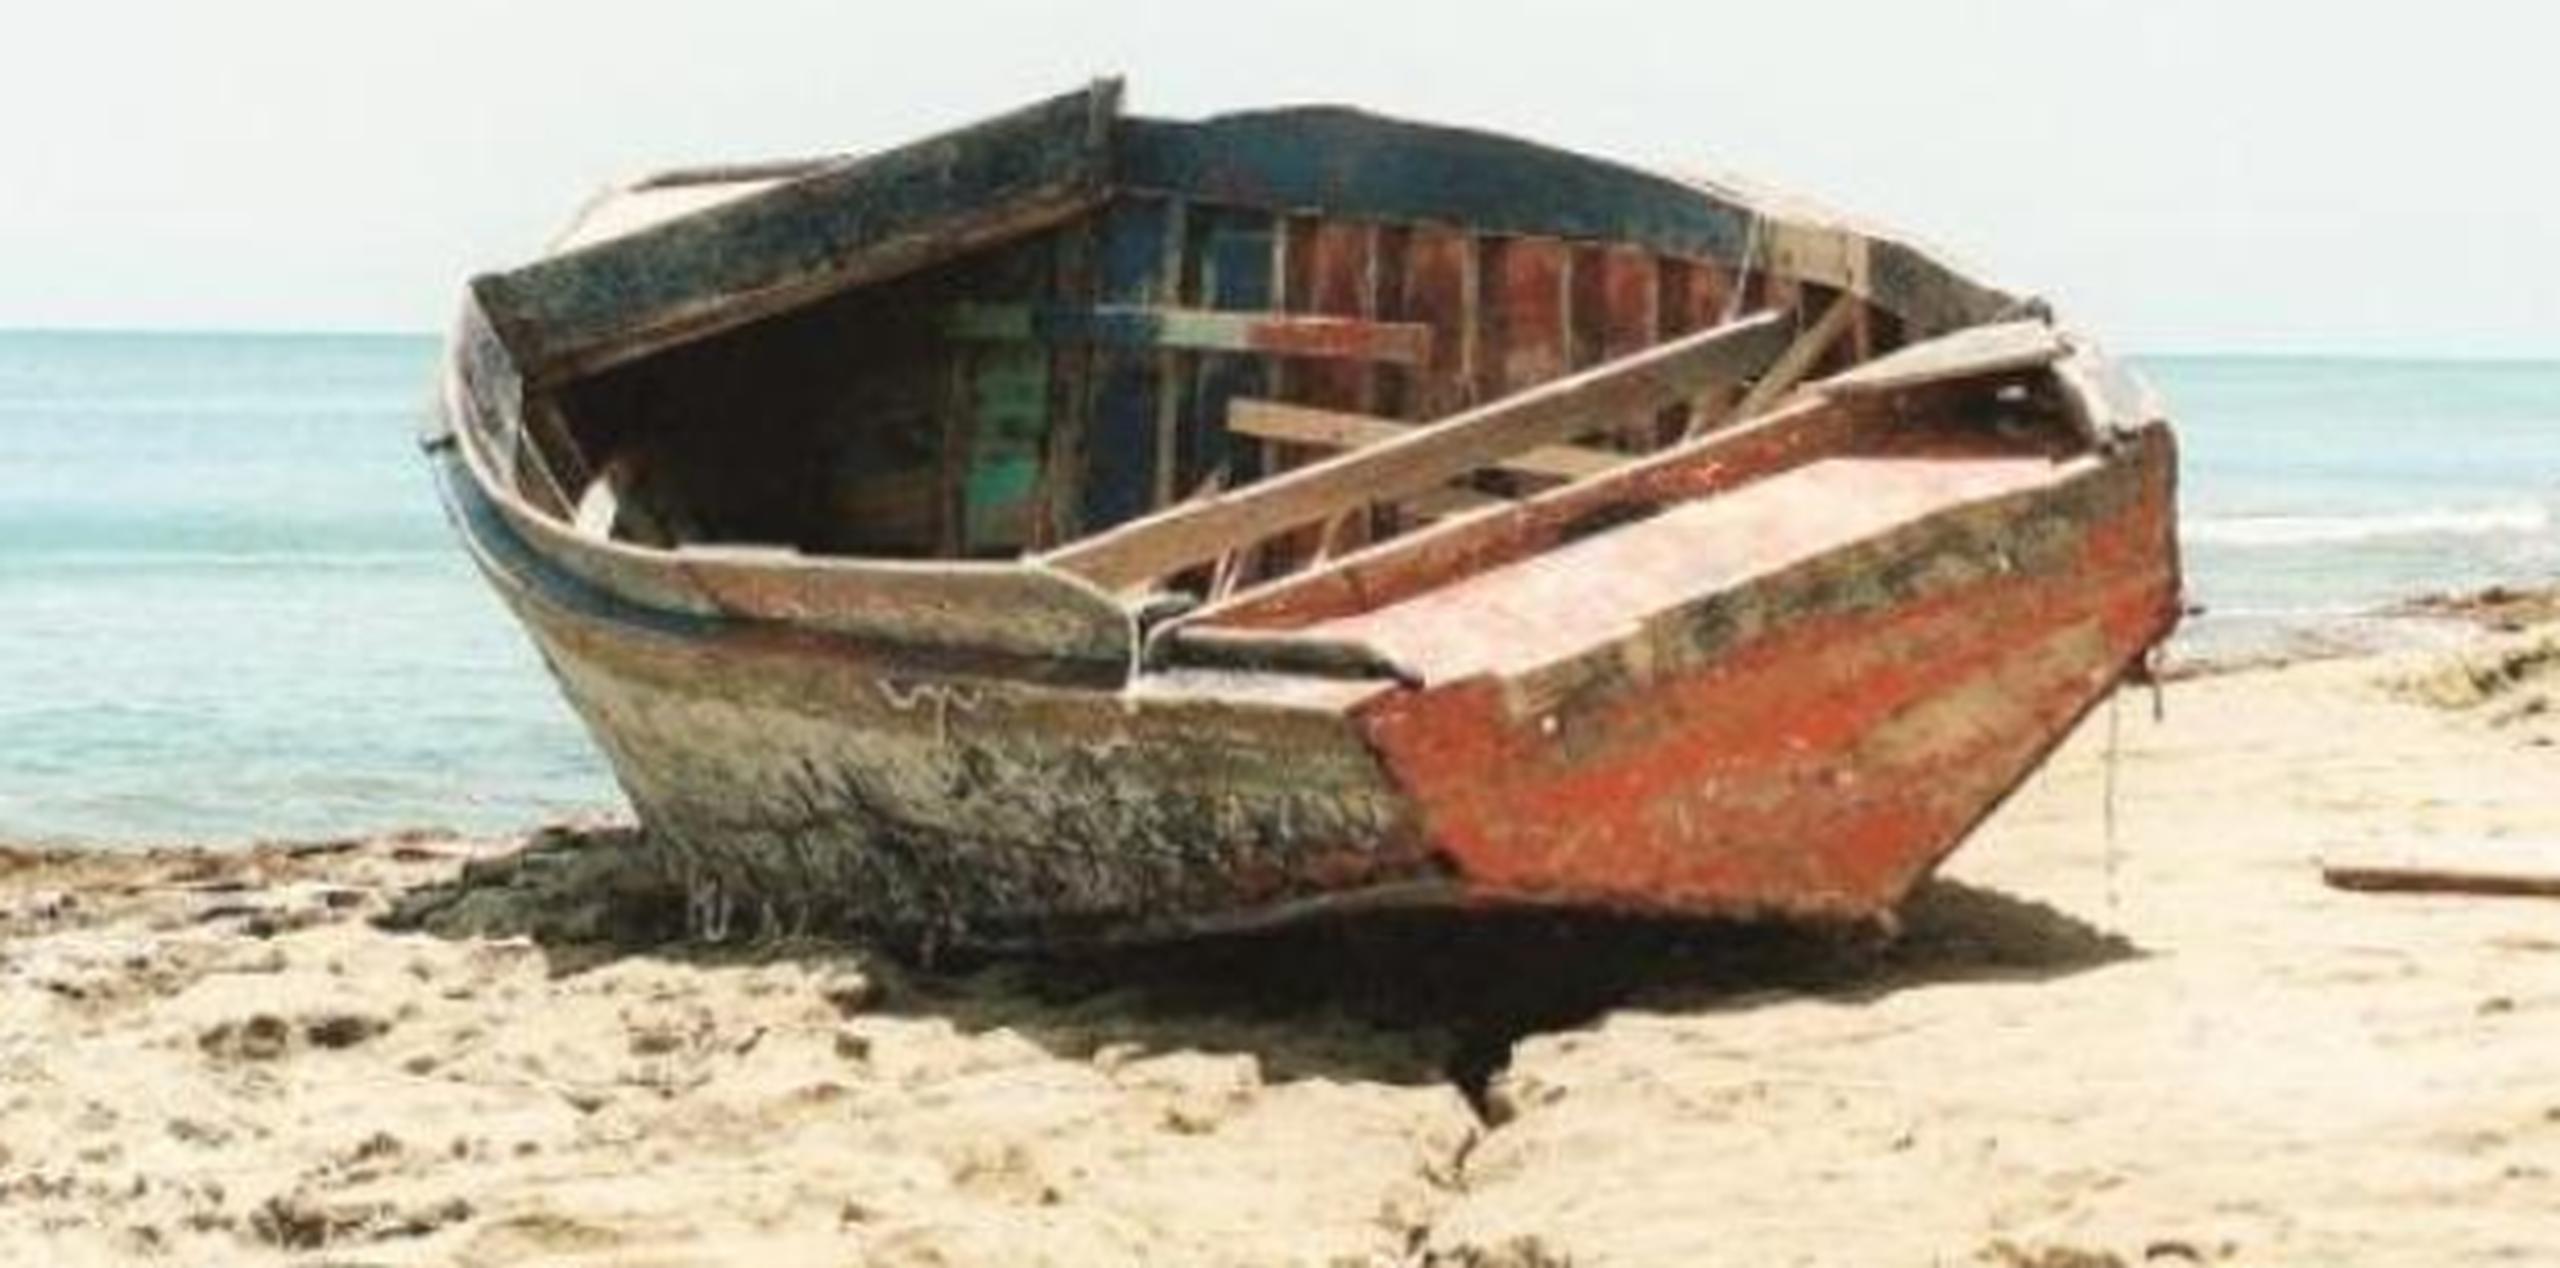 La embarcación en la que fue localizado fue descrita como de 20 pies de eslora. (Archivo)